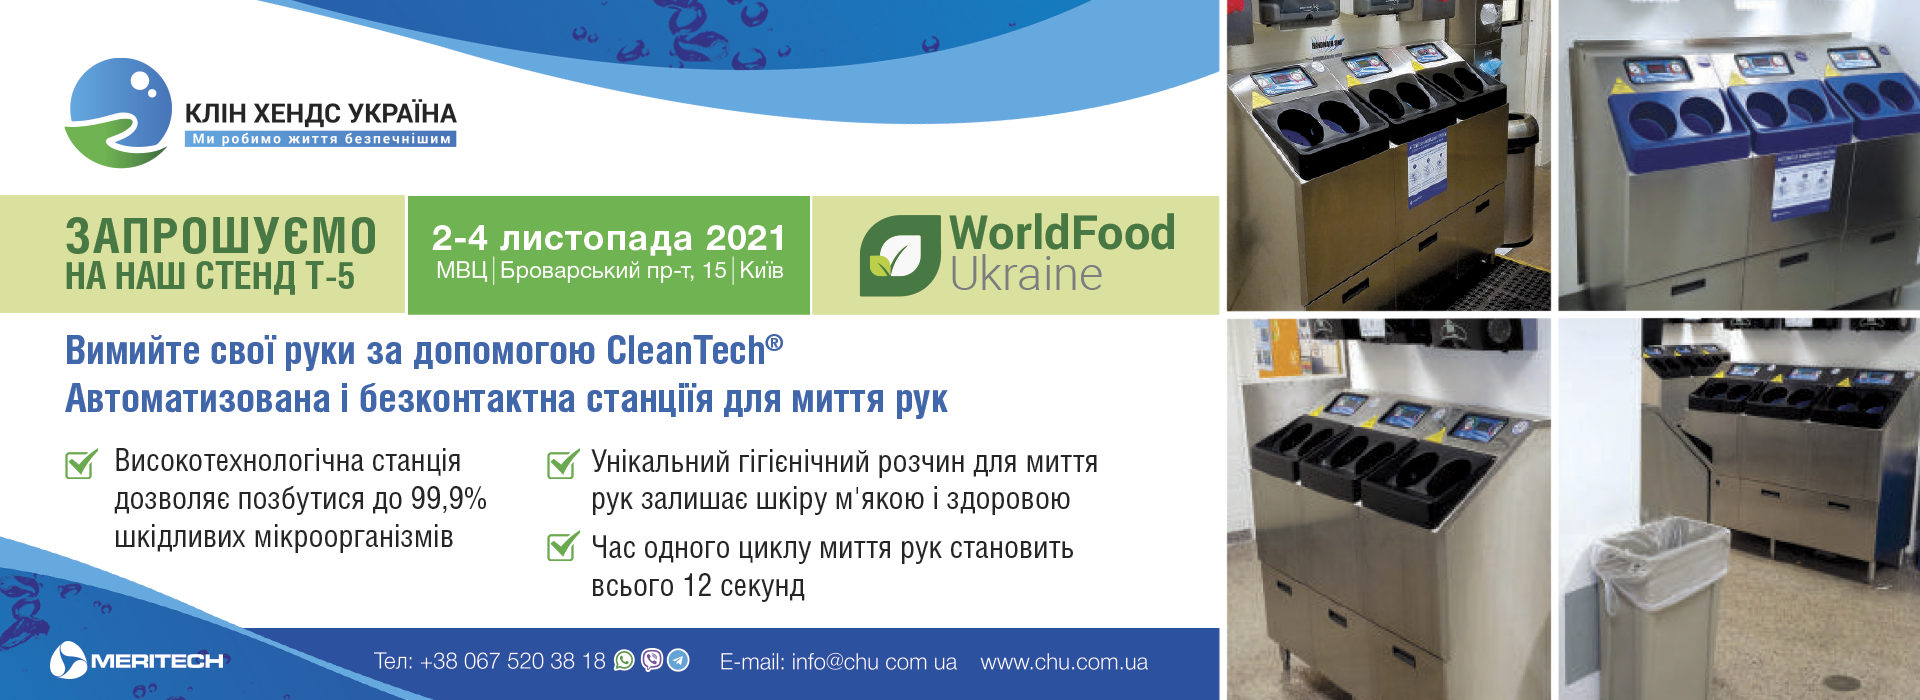 Запрошуємо відвідати наш стенд (Т-5) на виставці WorldFood Ukraine 2021